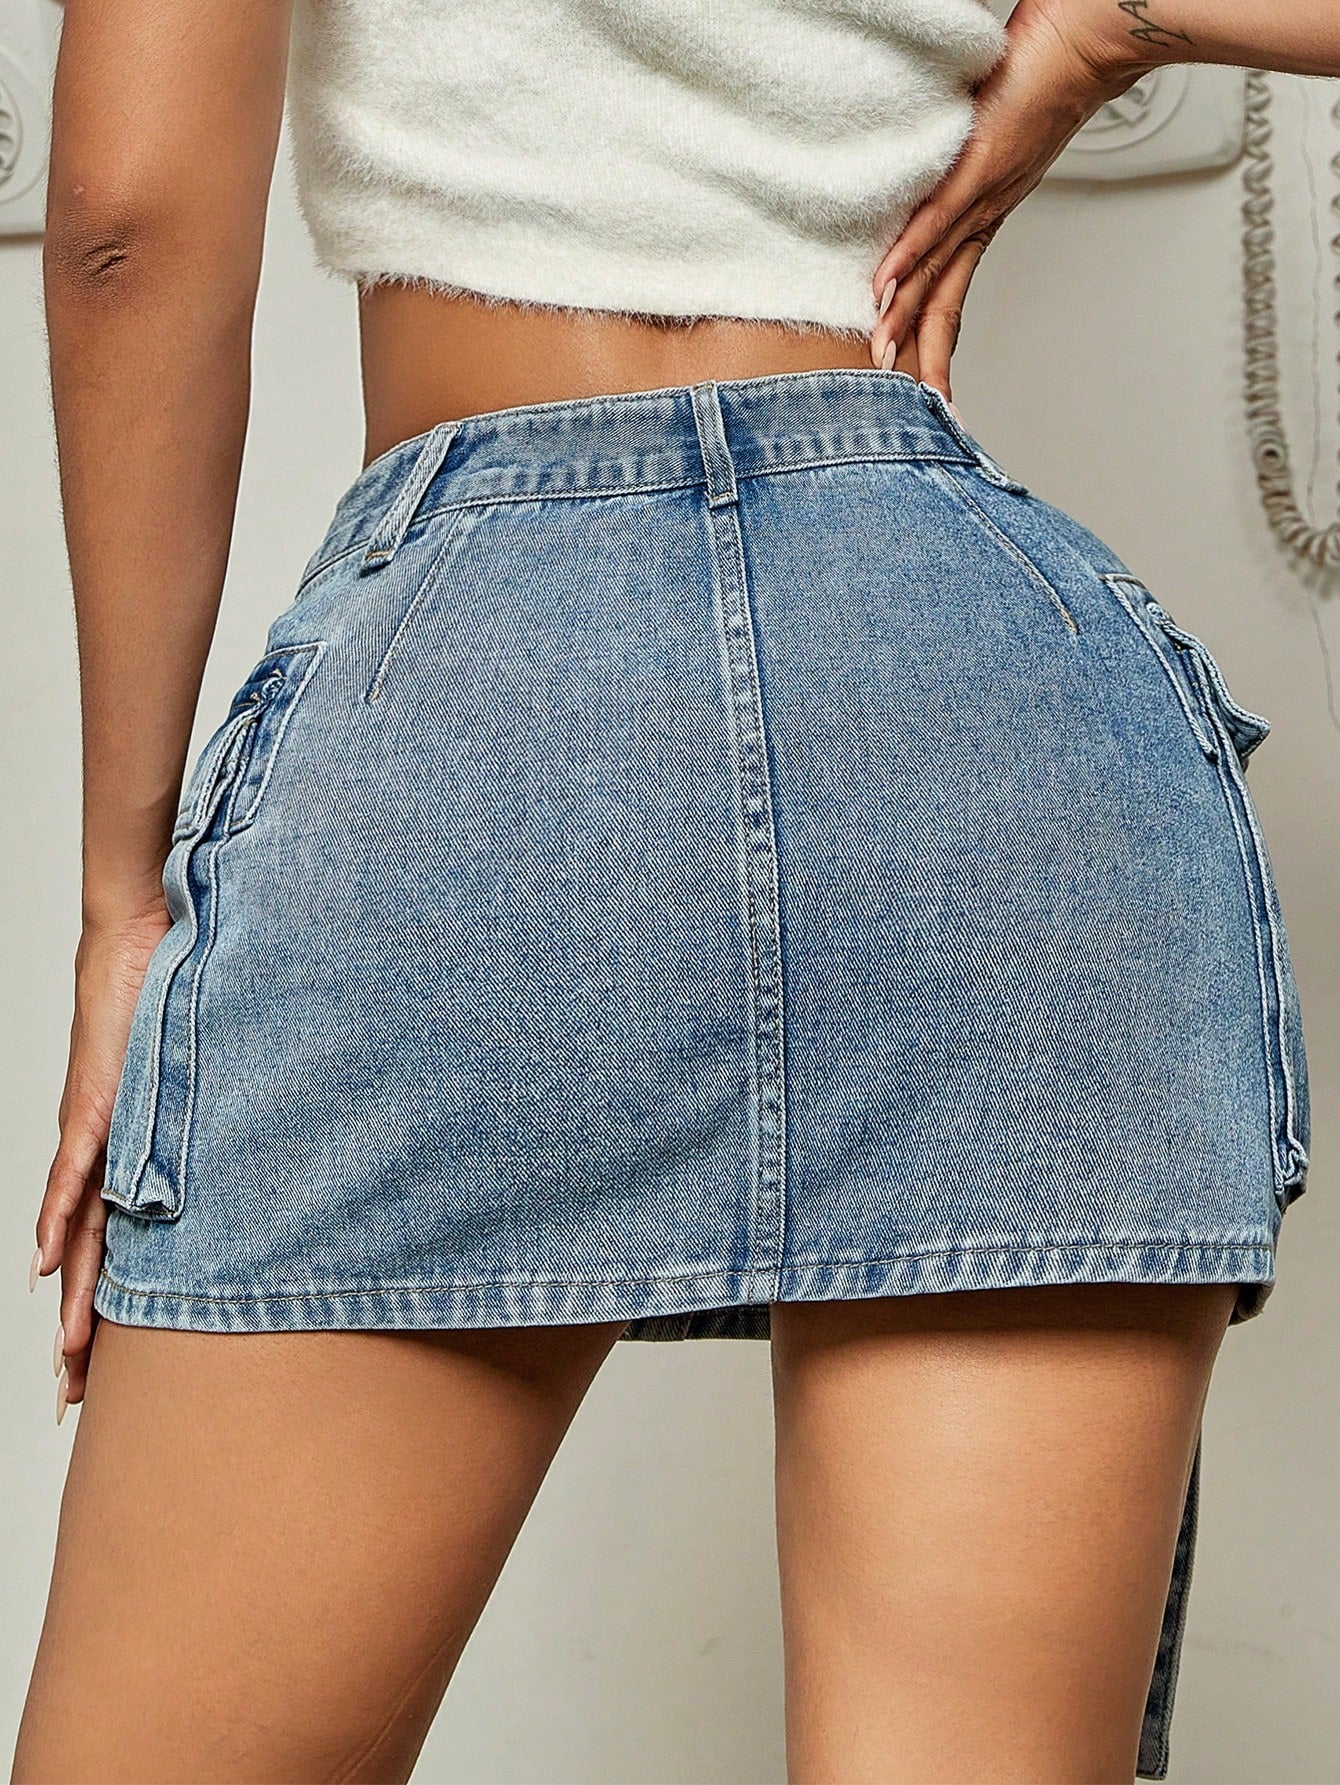 TEEK - Flap Pocket Ribbon Denim Mini Skirt SKIRT theteekdotcom   